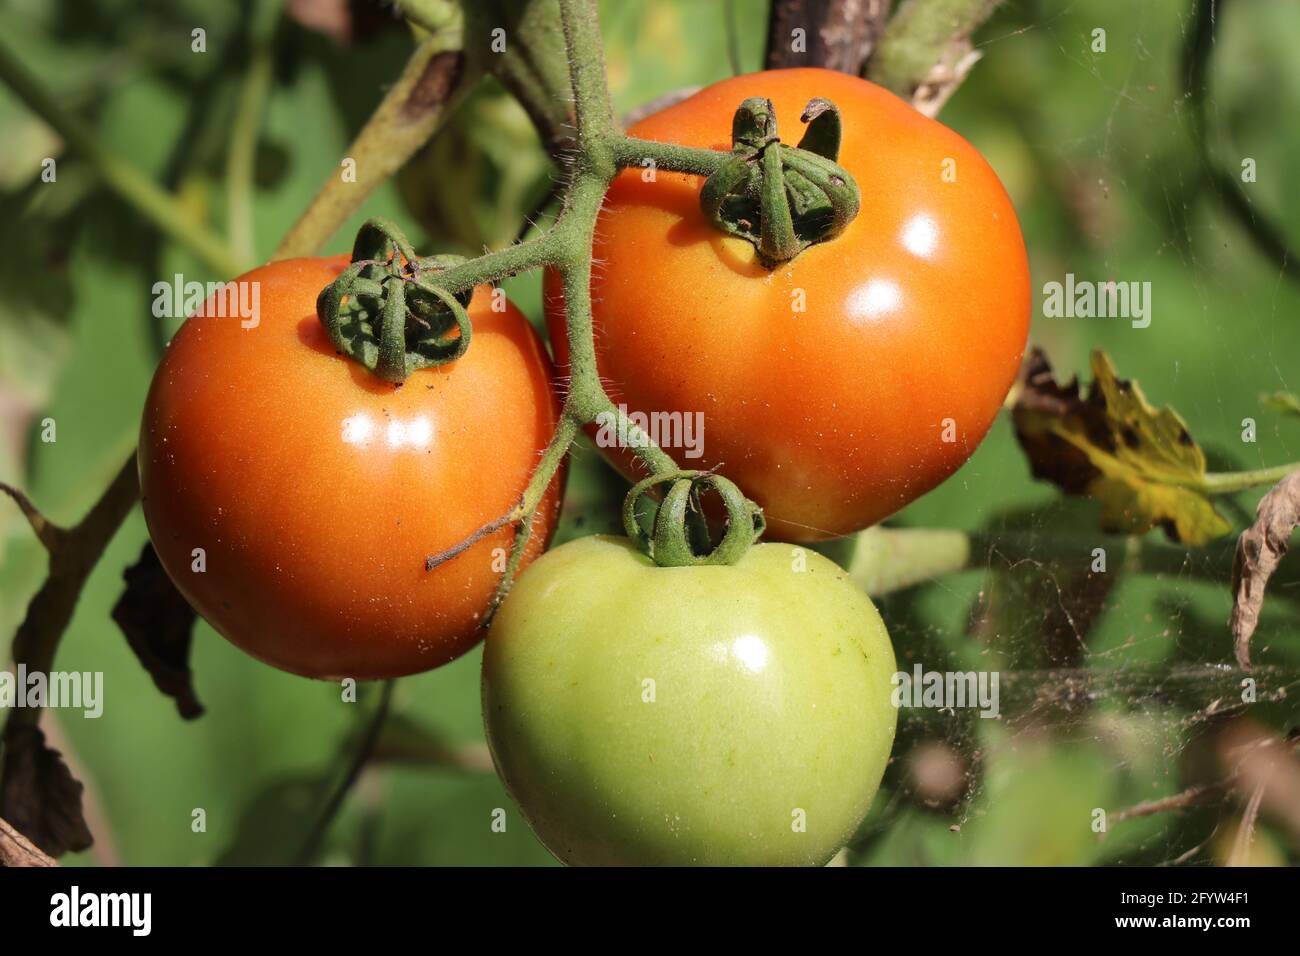 Les tomates cerises rouges mûrissent à l'usine dans un jardin ouvert le jour ensoleillé. Il s'agit d'aliments nutritifs riches en vitamines et en folate qui sont bons pour la santé humaine Banque D'Images